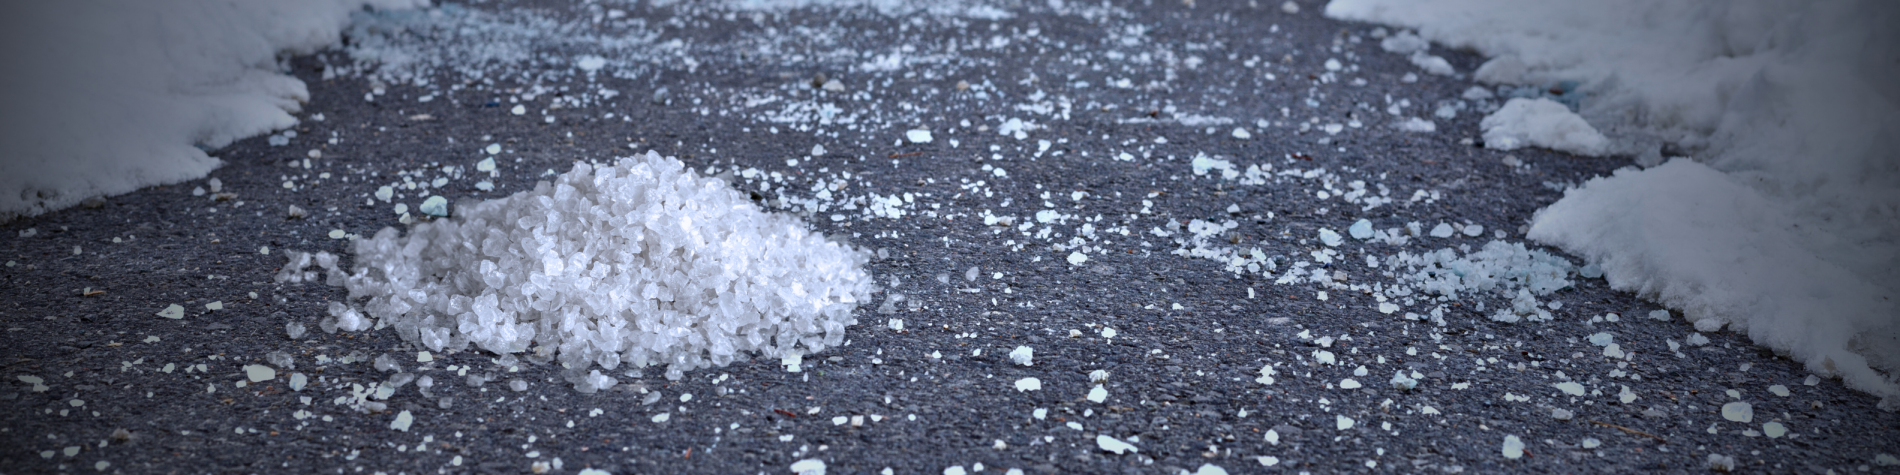 Salt on sidewalk